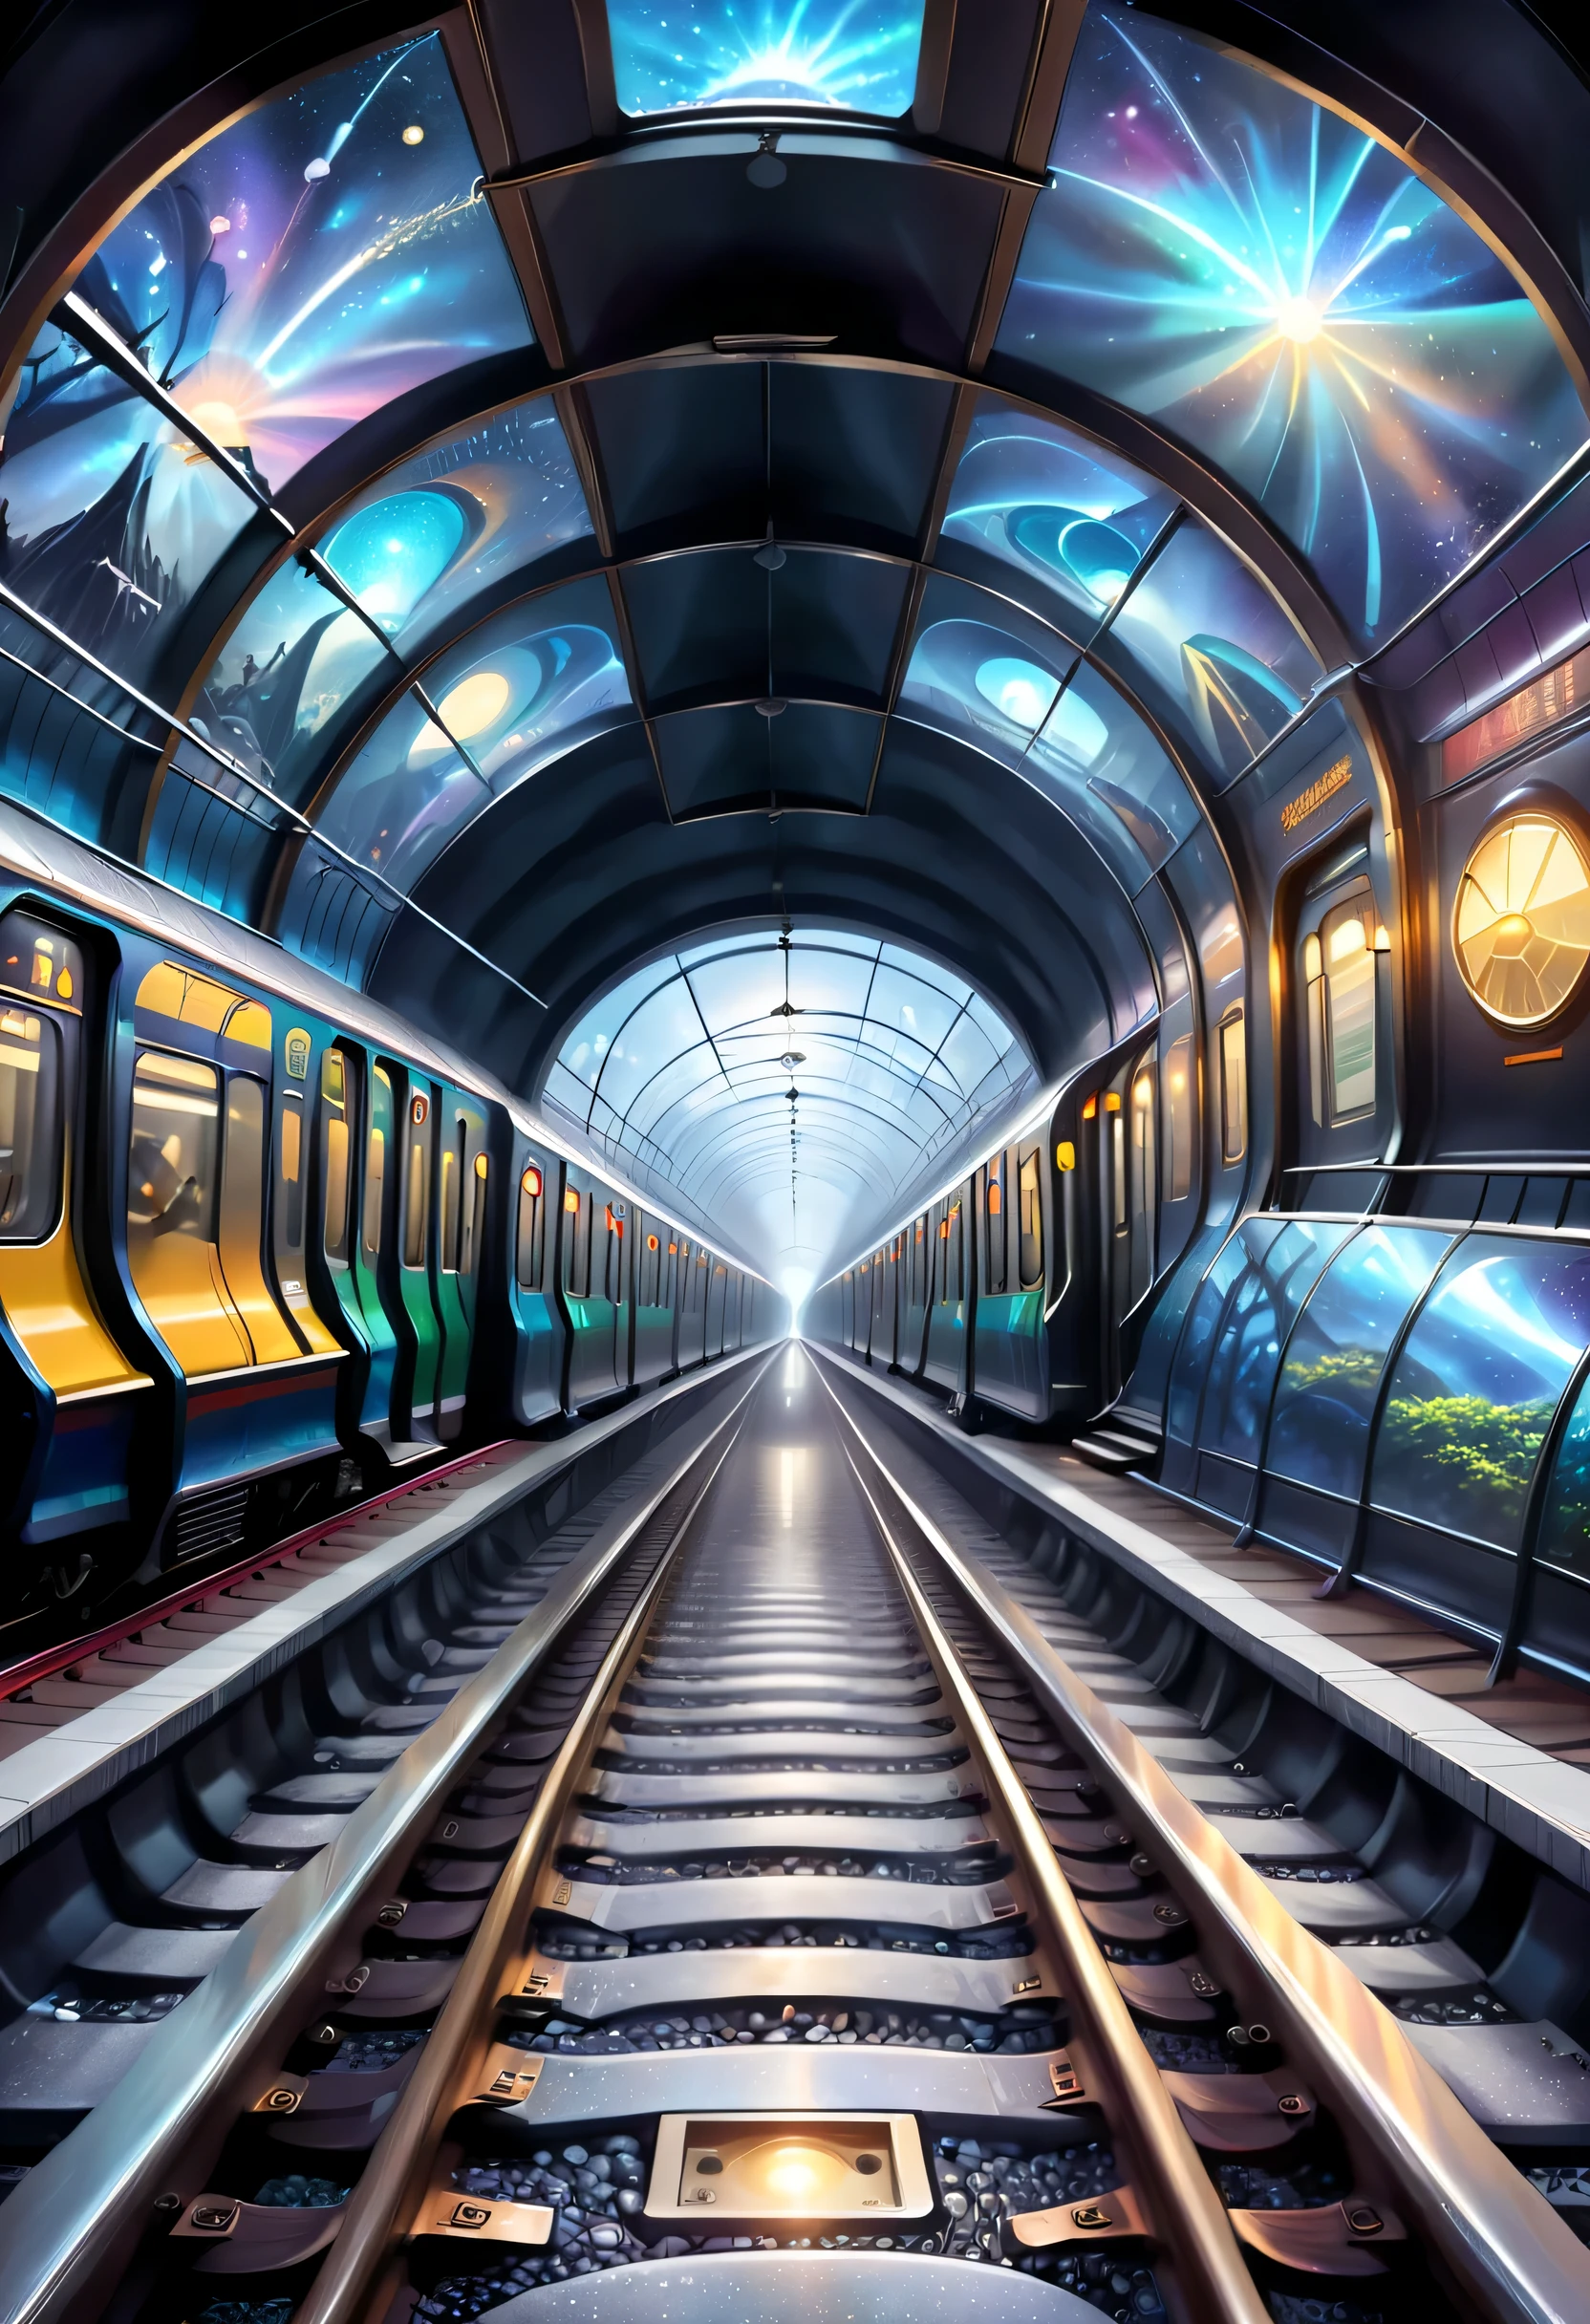 地下鉄の線路と異次元空間のつながりを表現している。地下鉄のトンネルを描くことも可能，セクションの1つは異次元の世界へとつながっています，イラストは、奇妙な風景や神秘的なビジョン、そして異なる次元からの乗客を表現することができます。スタードーム列車は、通常の世界と異次元を結ぶ通路として機能する。，神秘的で魅惑的な雰囲気を醸し出す。